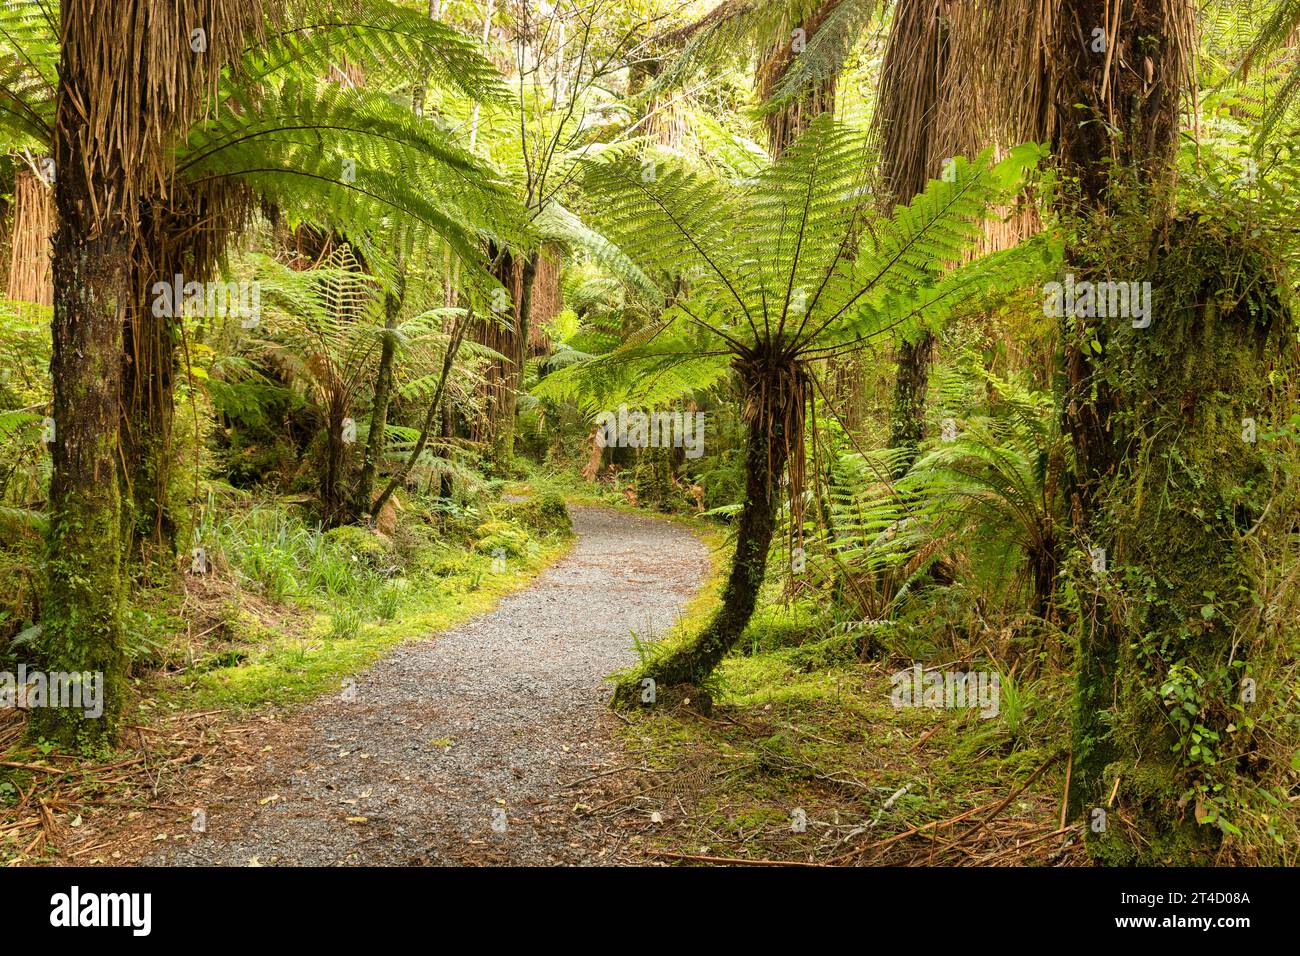 Des fougères arboricoles bordent ce chemin à travers le Bush indigène sur la côte ouest de l'île du Sud, en Nouvelle-Zélande, près des chutes Roaring Billy. Banque D'Images